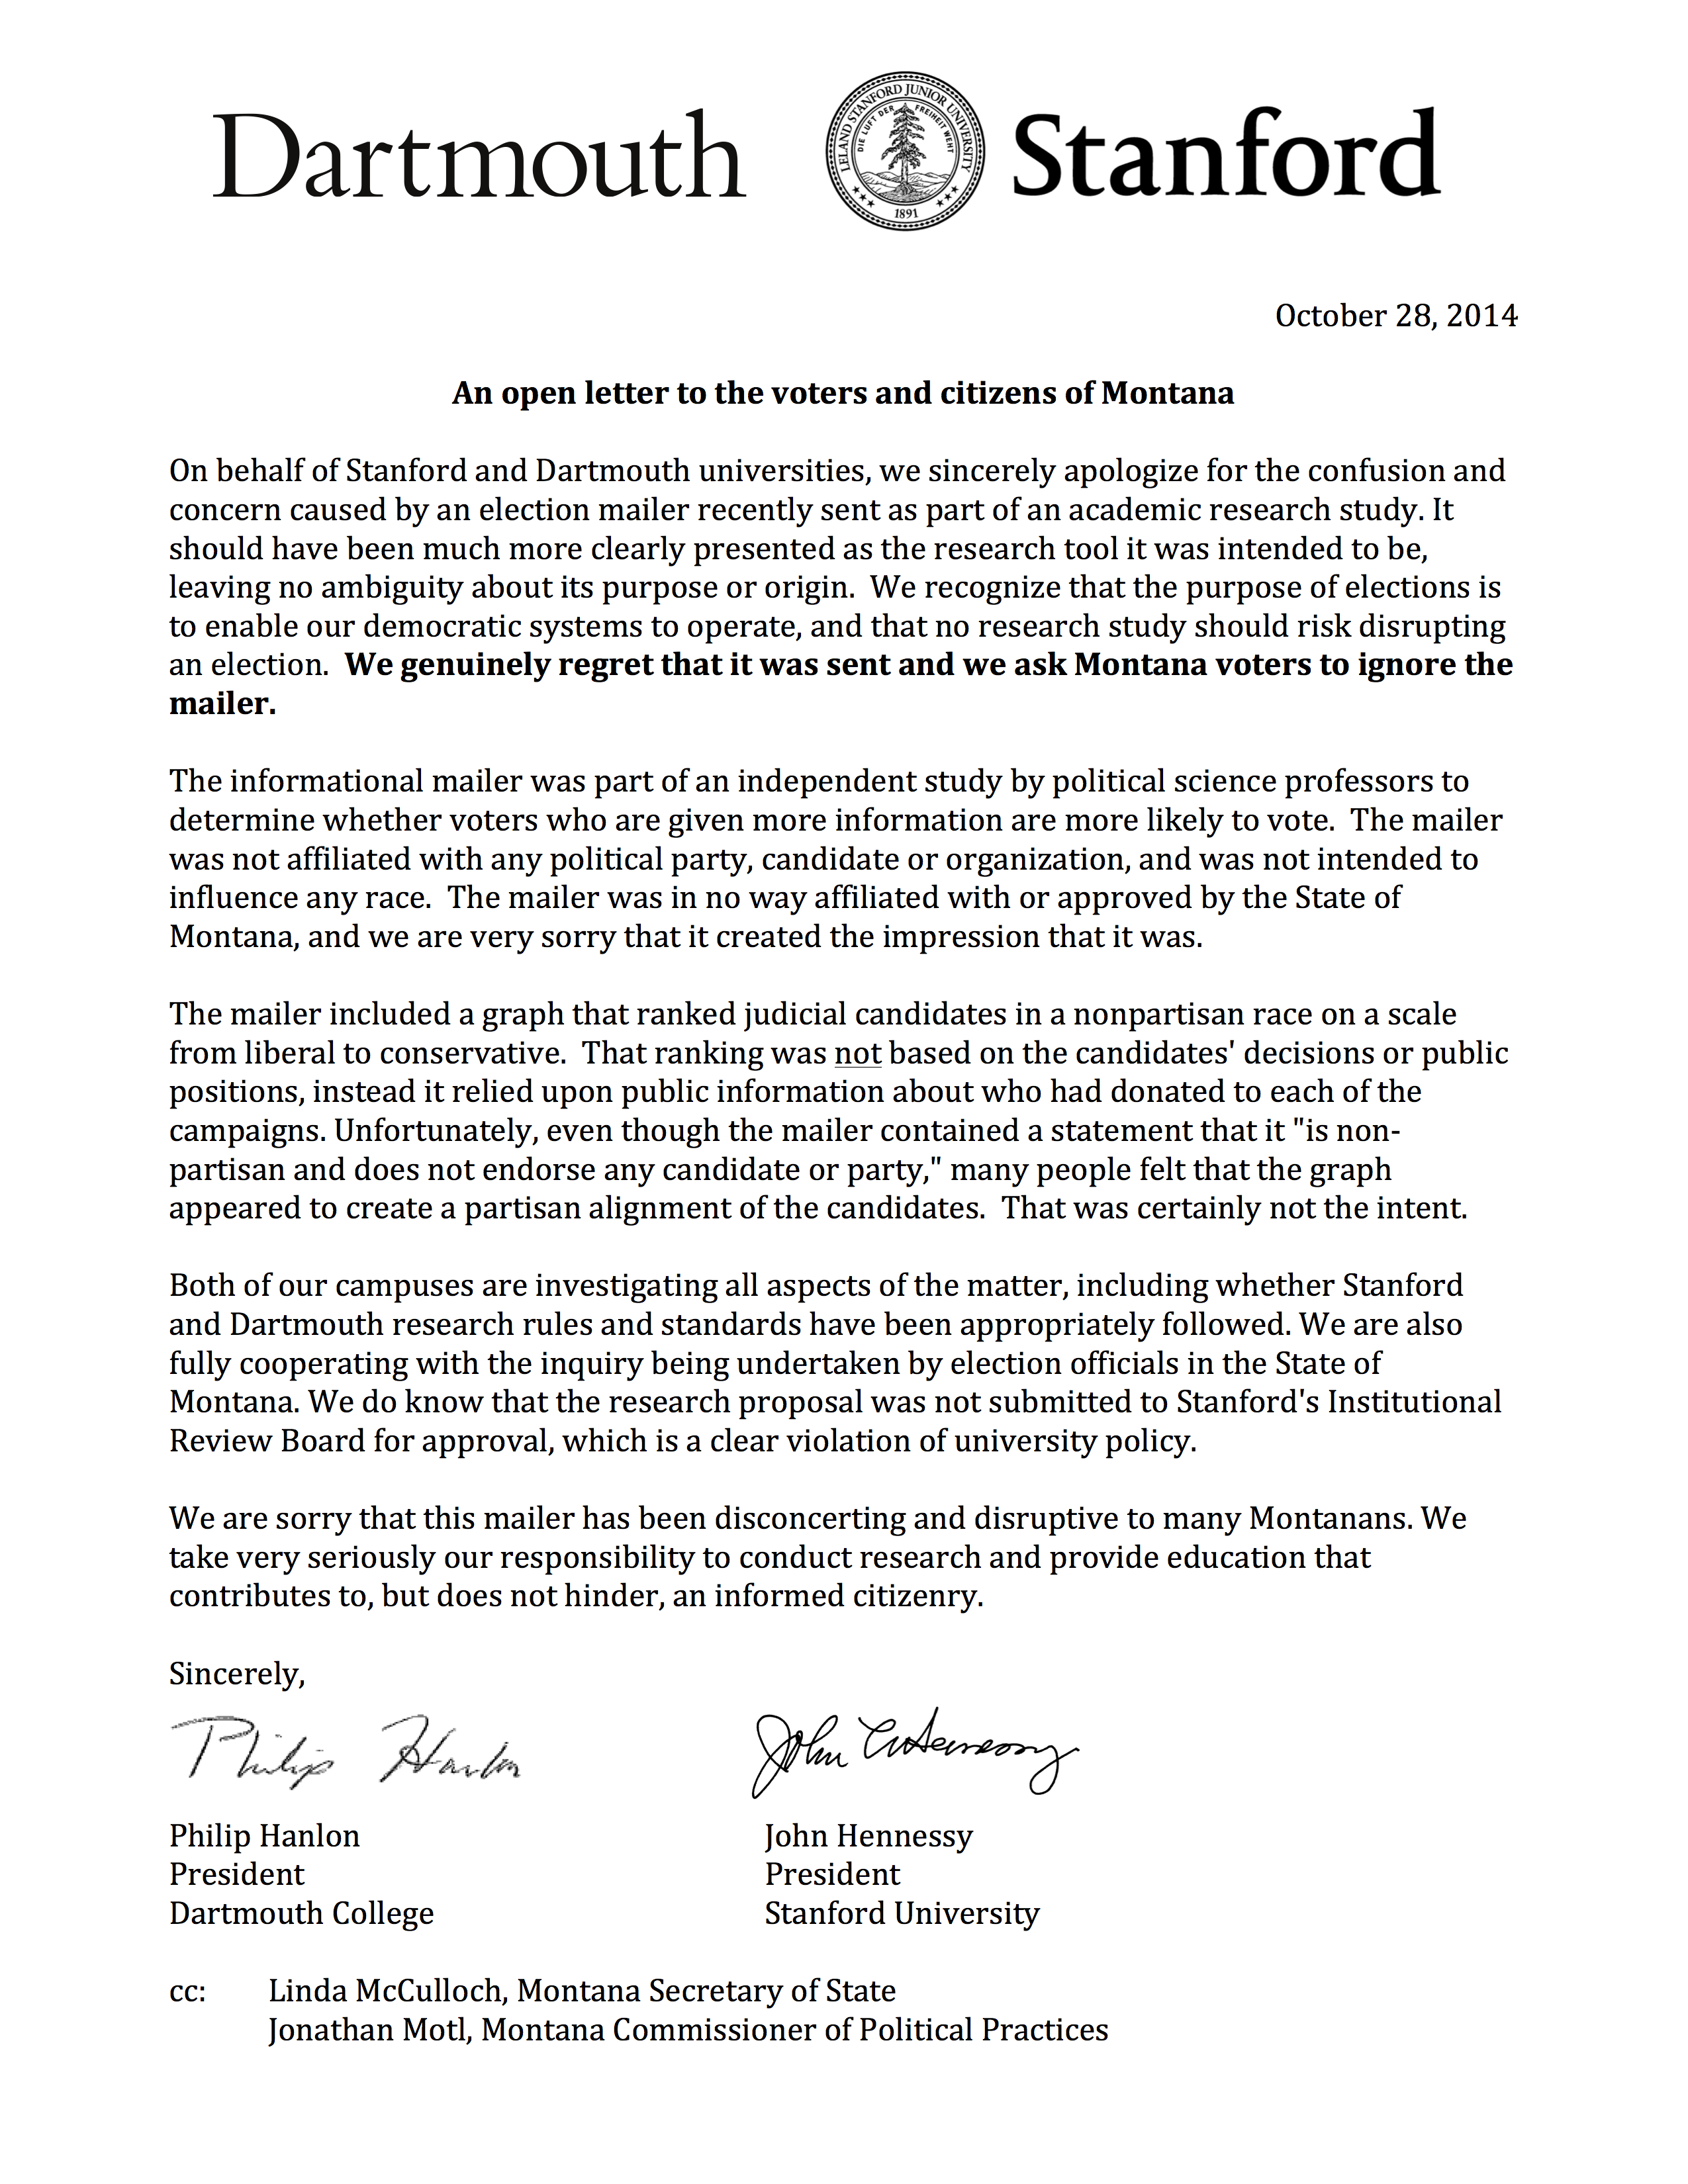 Слика 6.11: Писмо за извинување што беше испратено до 102.780 регистрирани гласачи во Монтана, кои го примиле испраќачот прикажан на слика 6.10. Писмото беше испратено од претседателите на Дартмут и Стенфорд, универзитетите кои ги ангажираа истражувачите кои испратија писмо. Репродуцирано од Motl (2015).